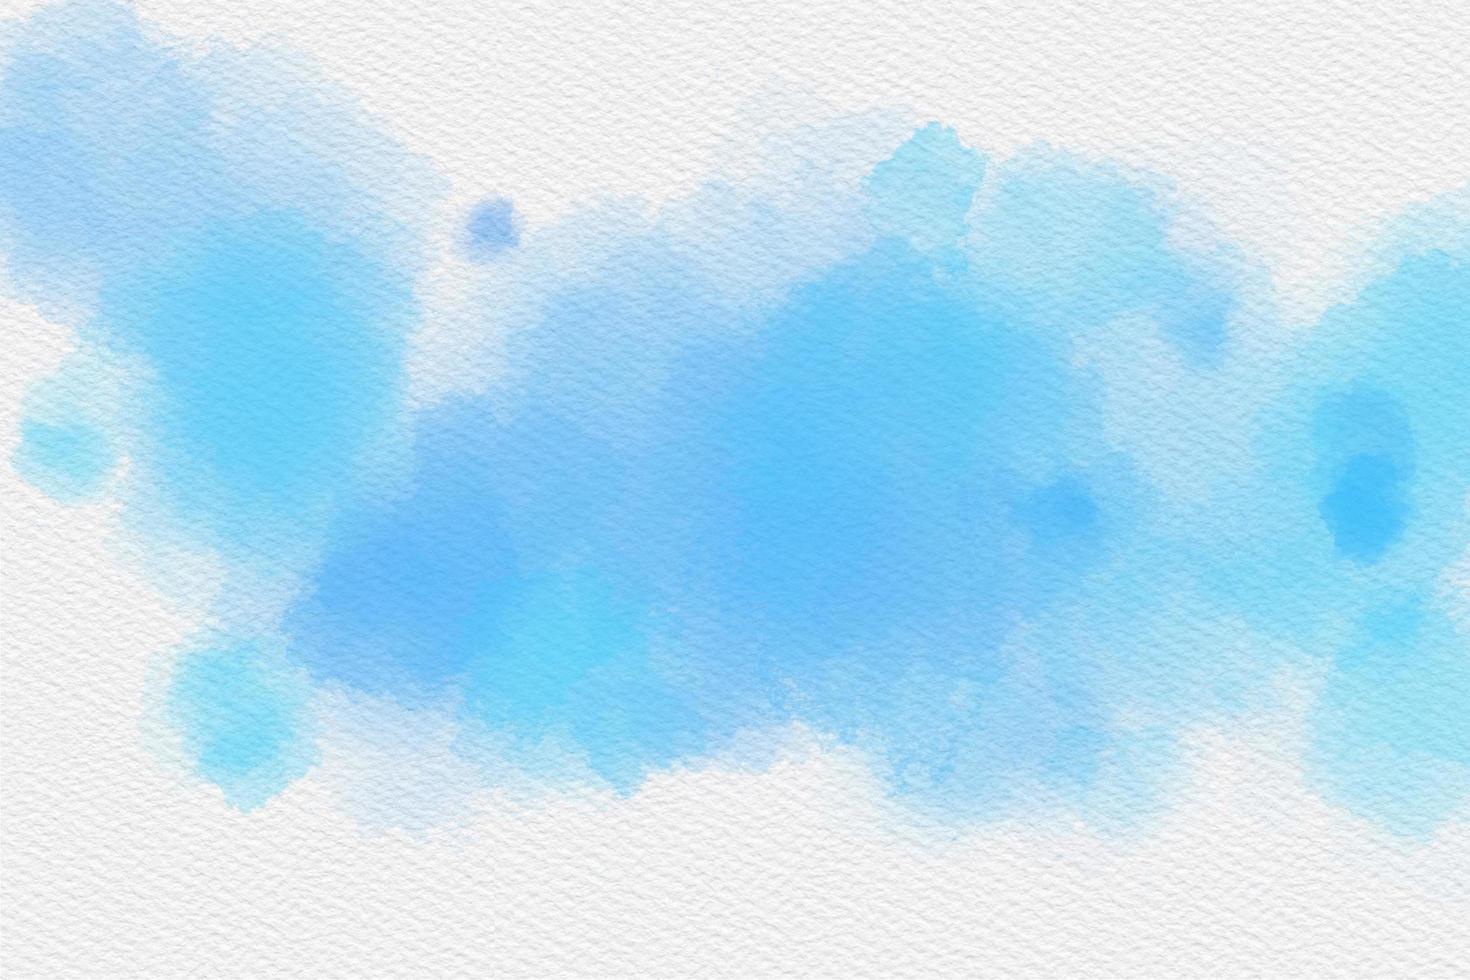 Indigo Blau Aquarell Hand Gemälde und Spritzen abstrakt Textur auf Weiß Papier Hintergrund. foto